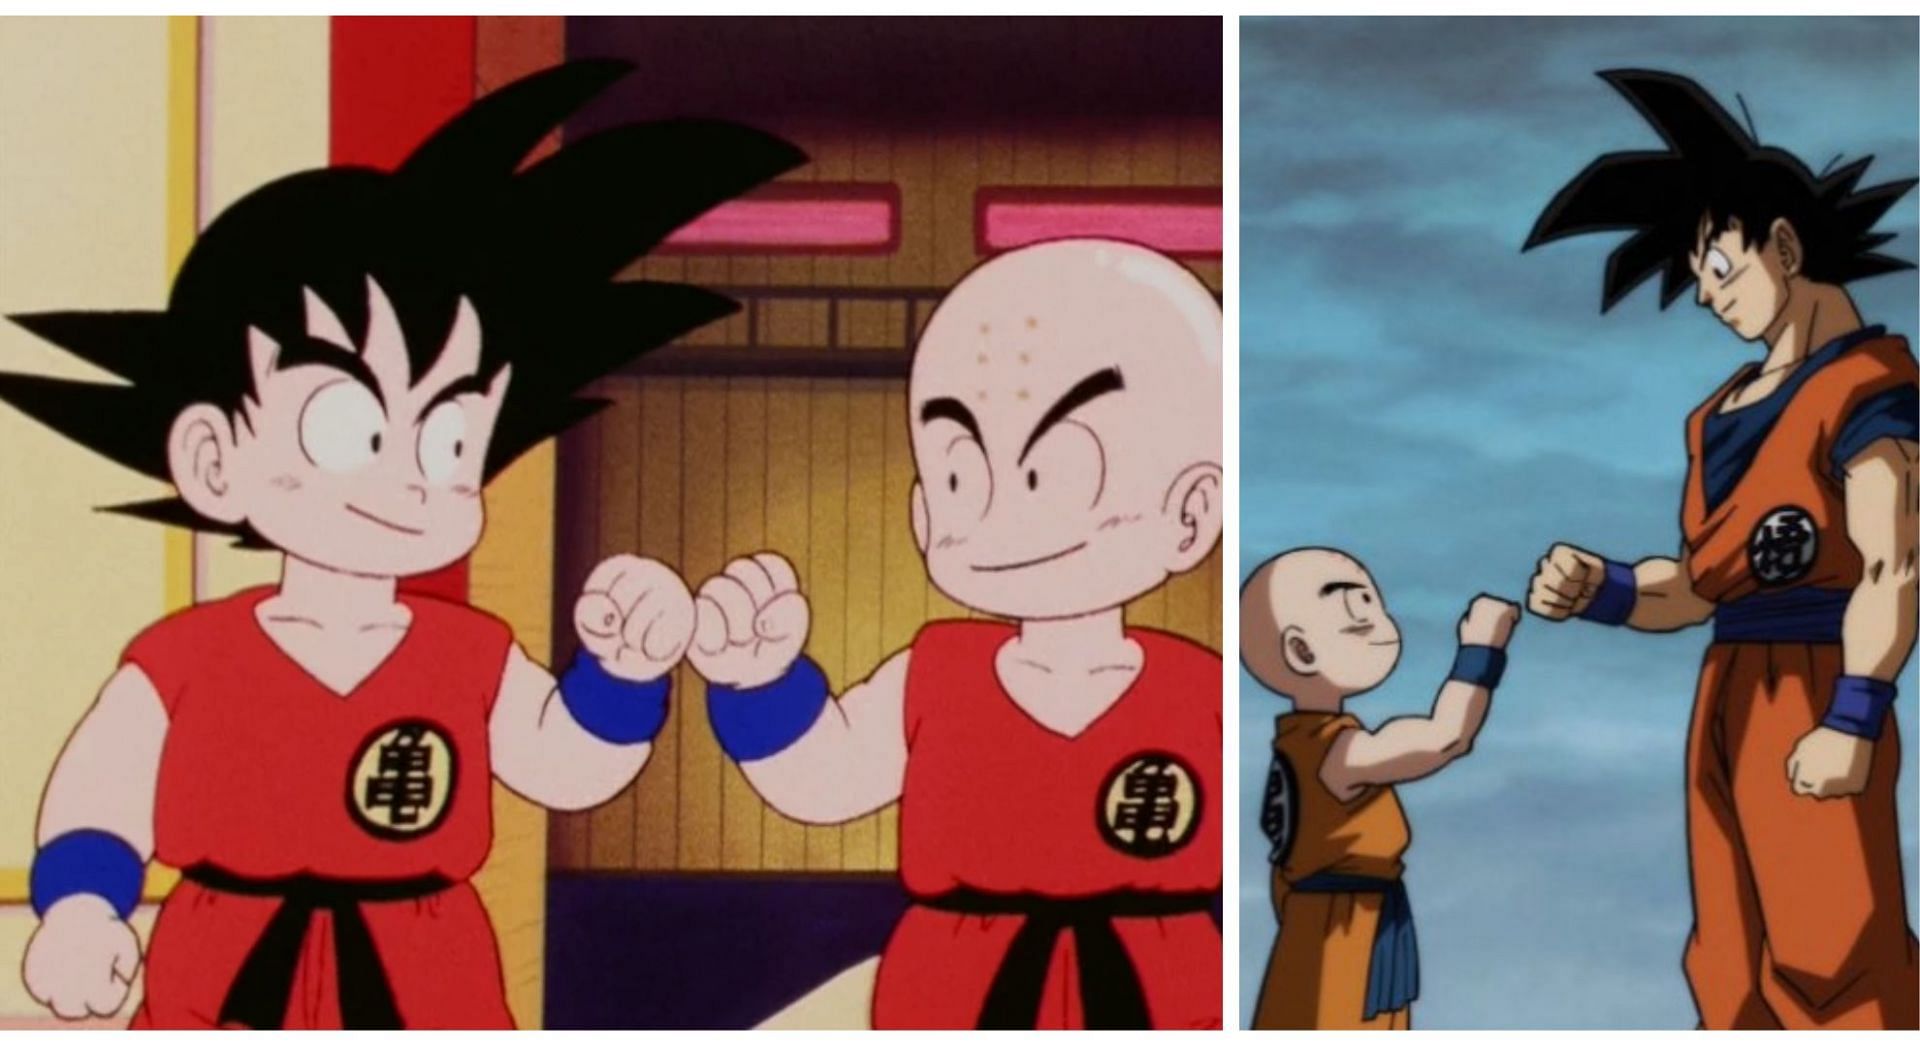 Goku and Krillin circa Dragon Ball and Super (Image via Sportskeeda)